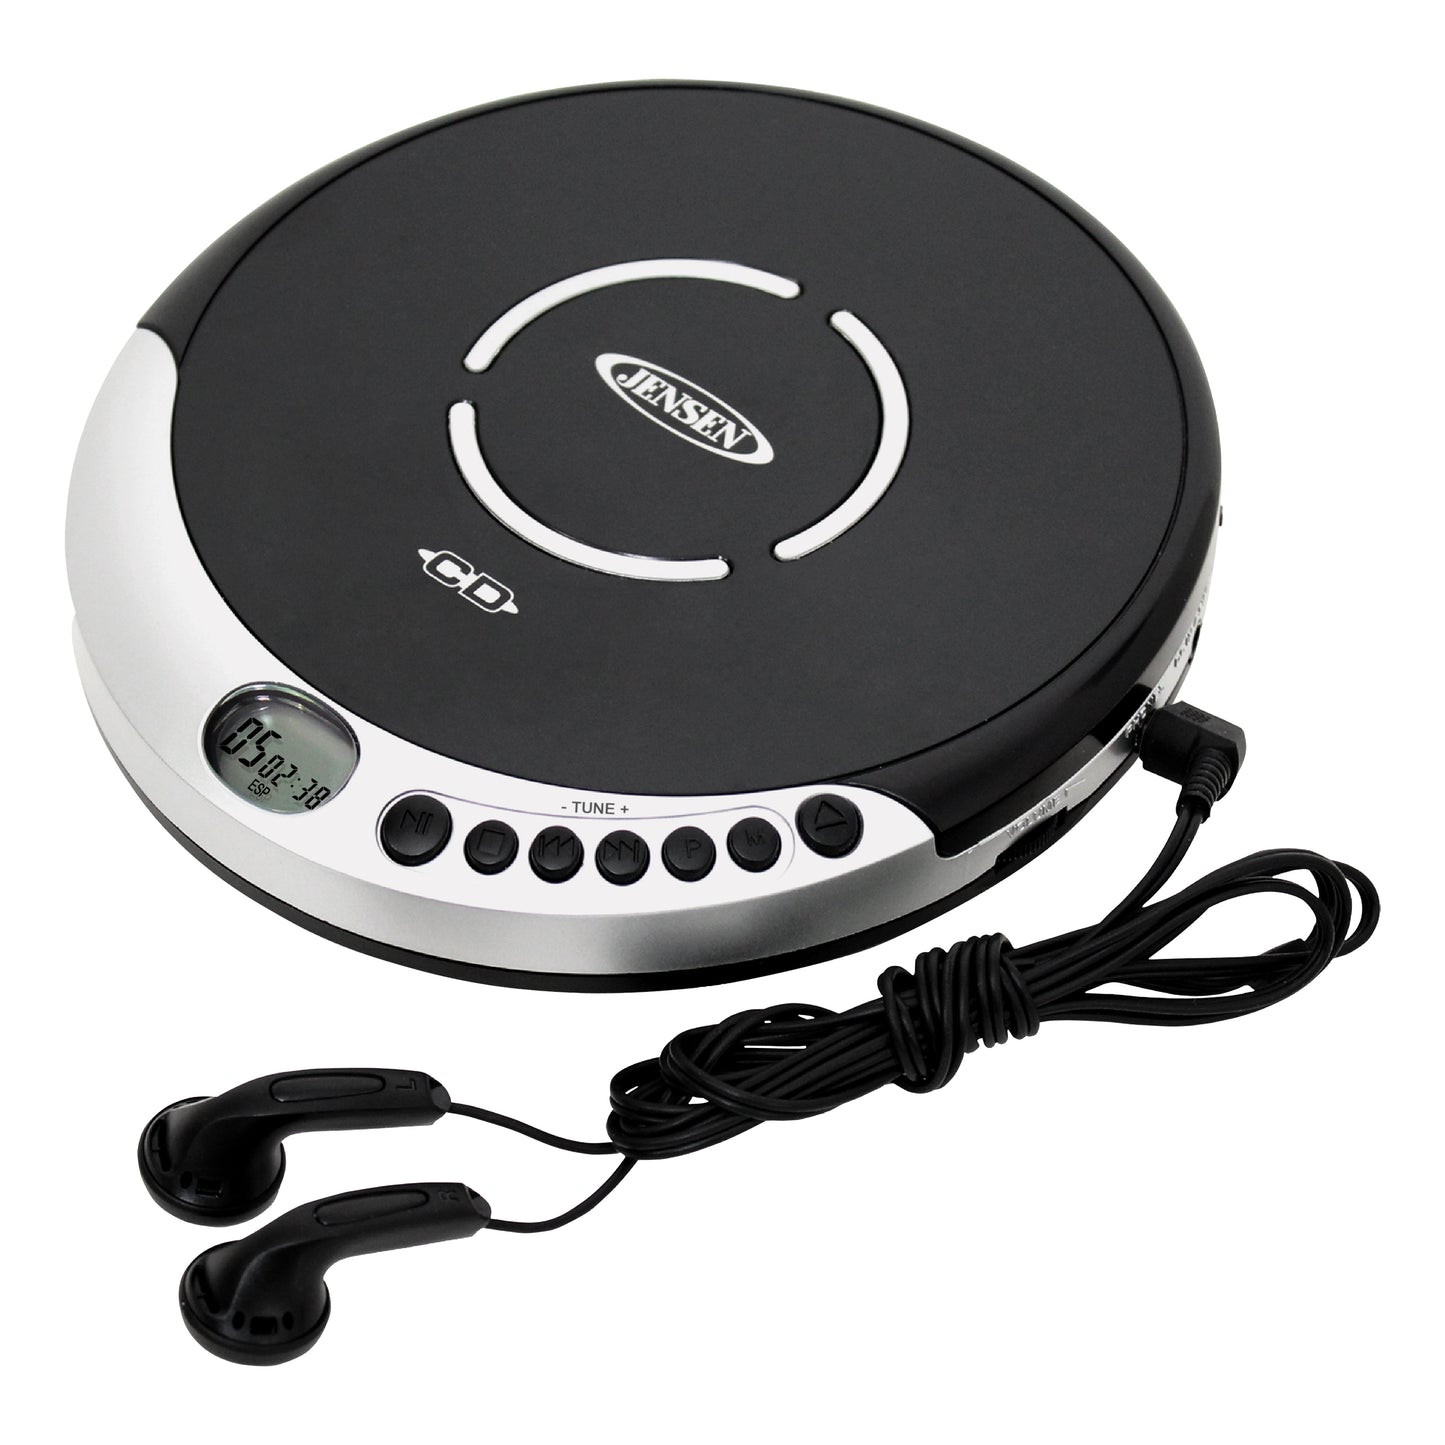 Jensen/Portable CD Player Discman (CD-60R)